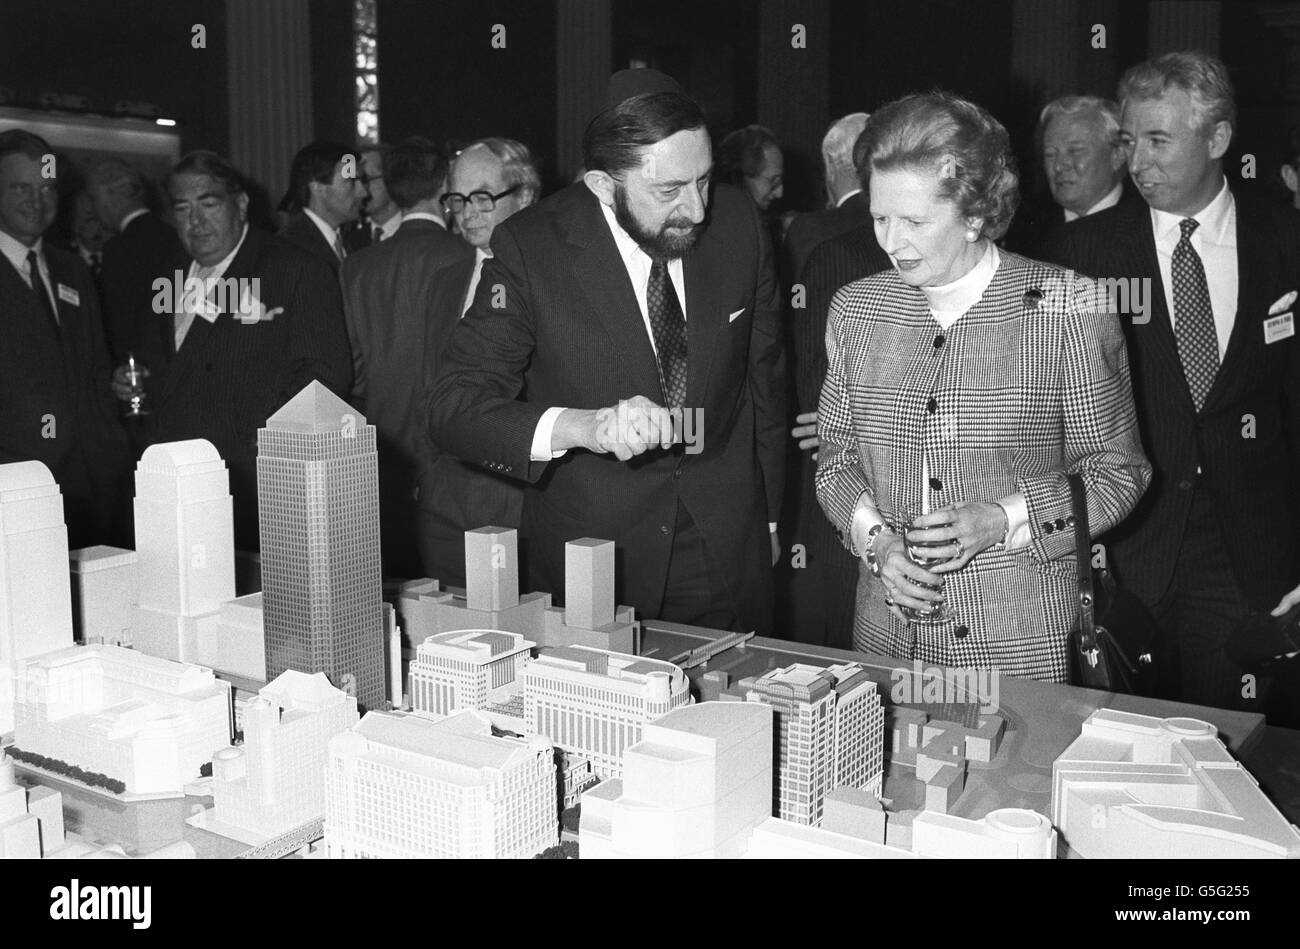 Politik - Margaret Thatcher und Paul Reichmann - Canary Wharf - 1988 Stockfoto